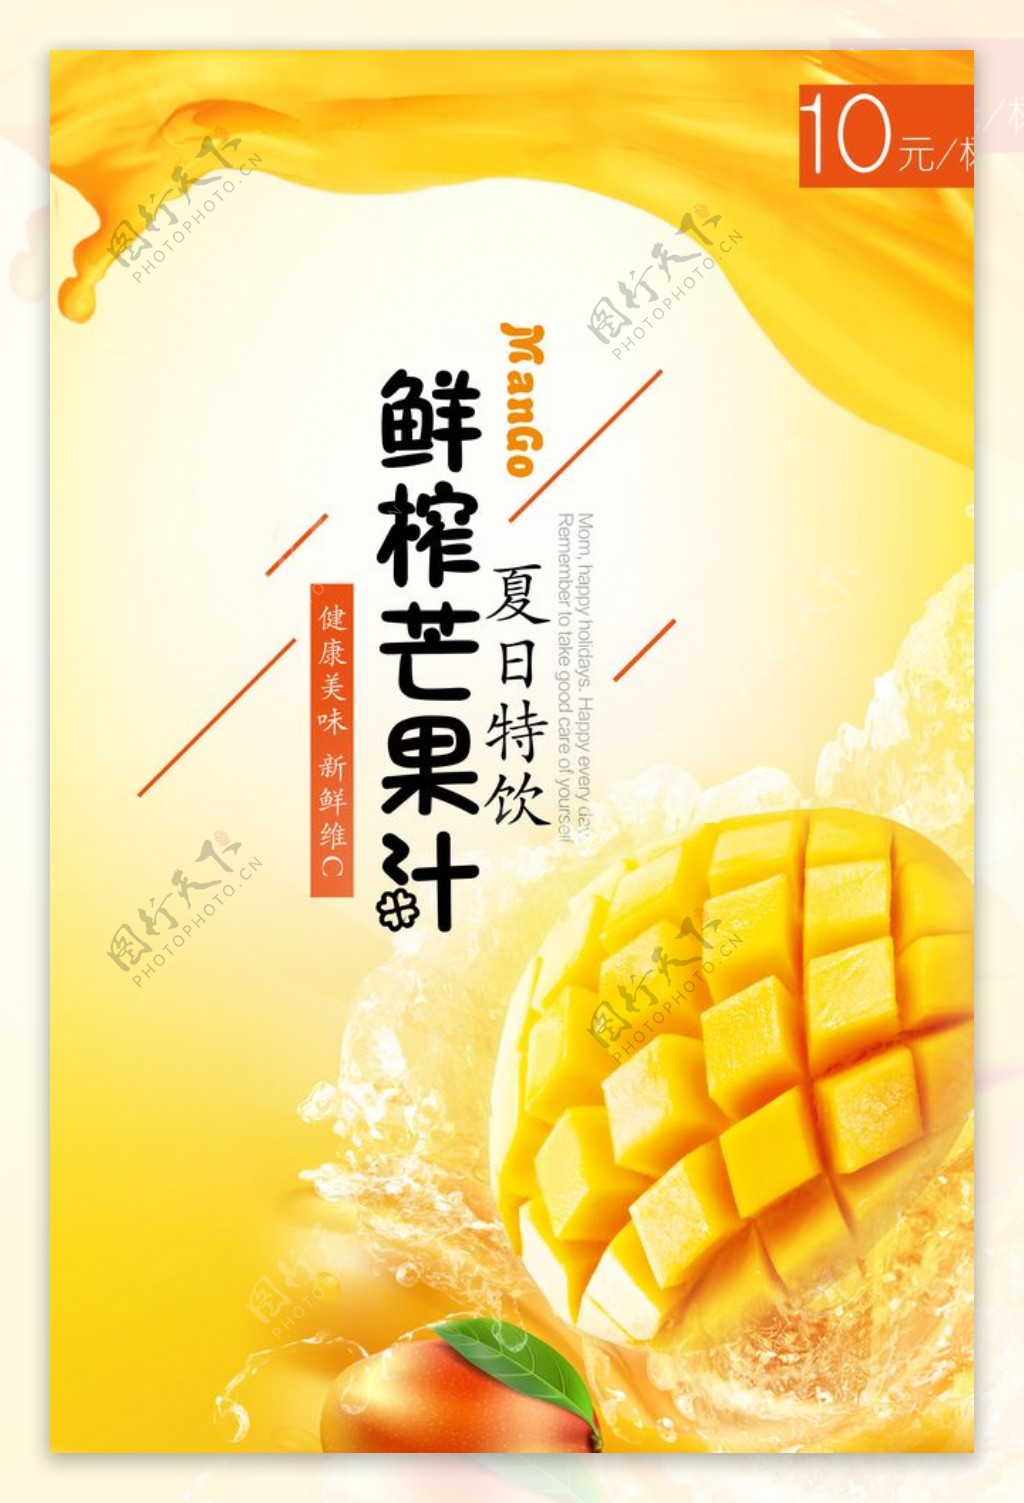 夏日芒果汁广告PSD素材